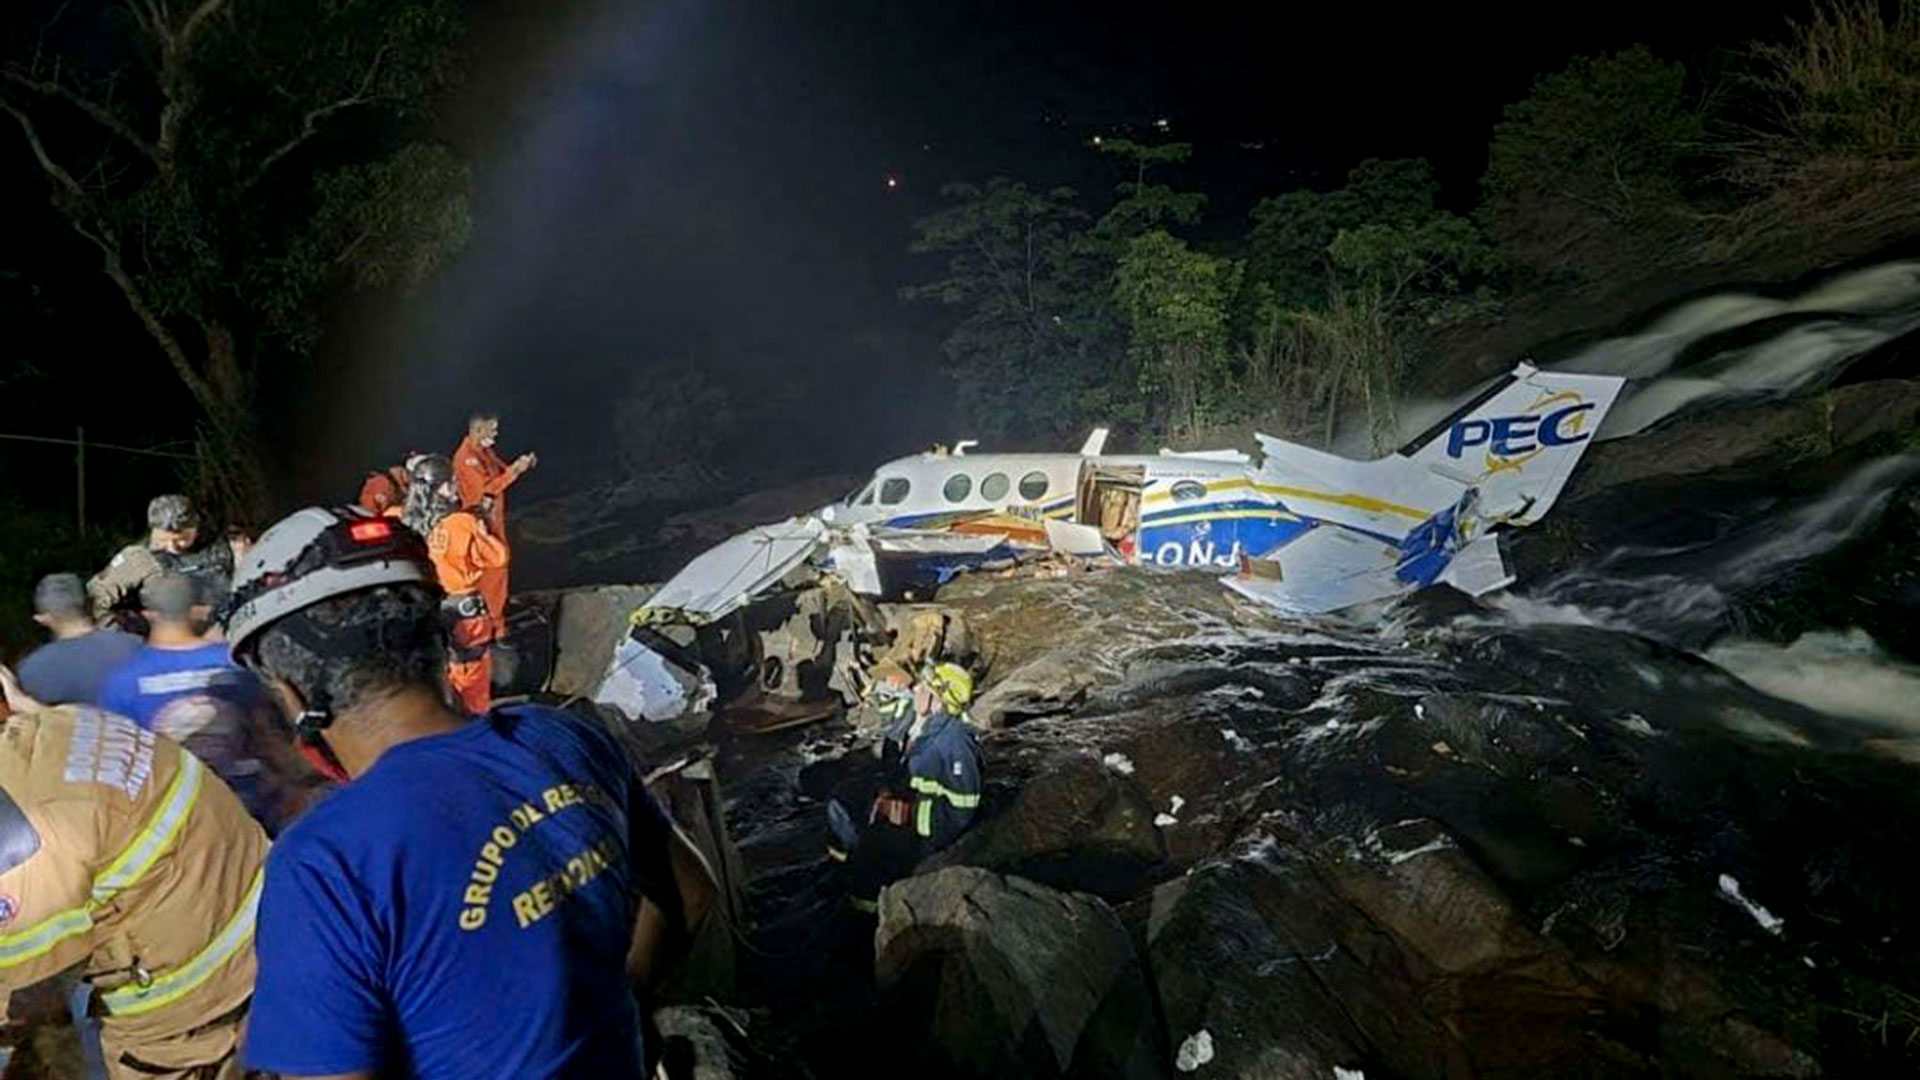 Imágenes del accidente en el que falleció la cantante Marilia Mendonca  (Photo by Minas Gerais Fire Department / AFP)